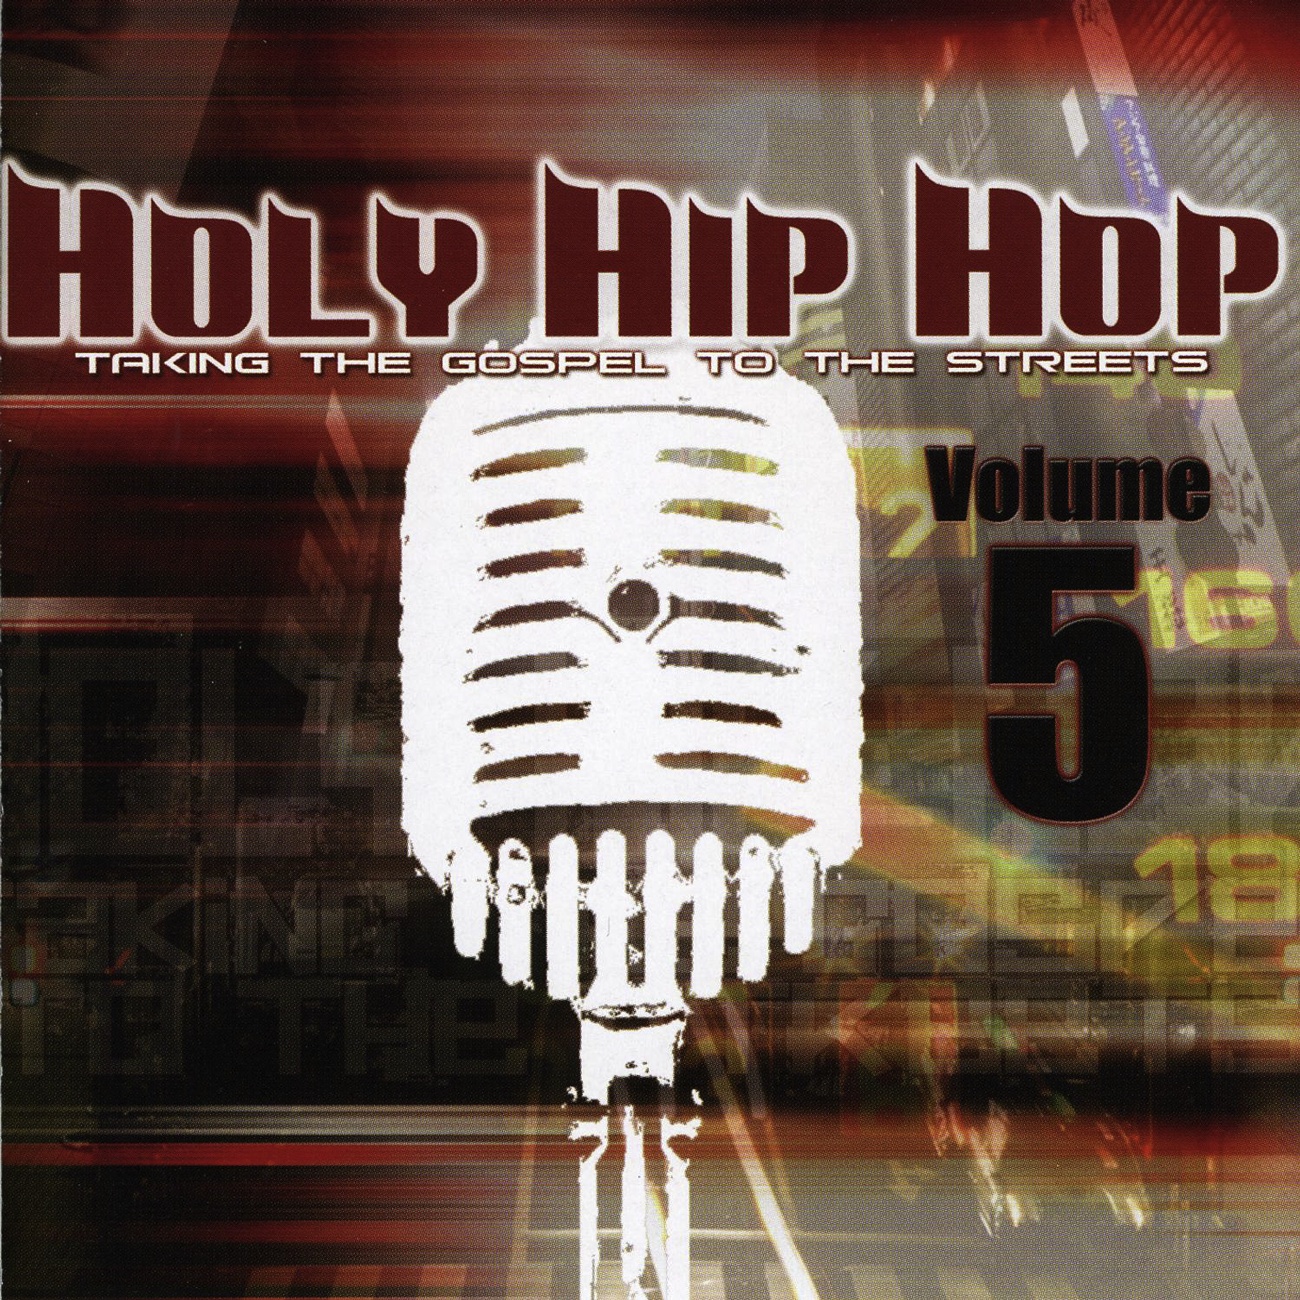 Holy Hip Hop Vol. 5